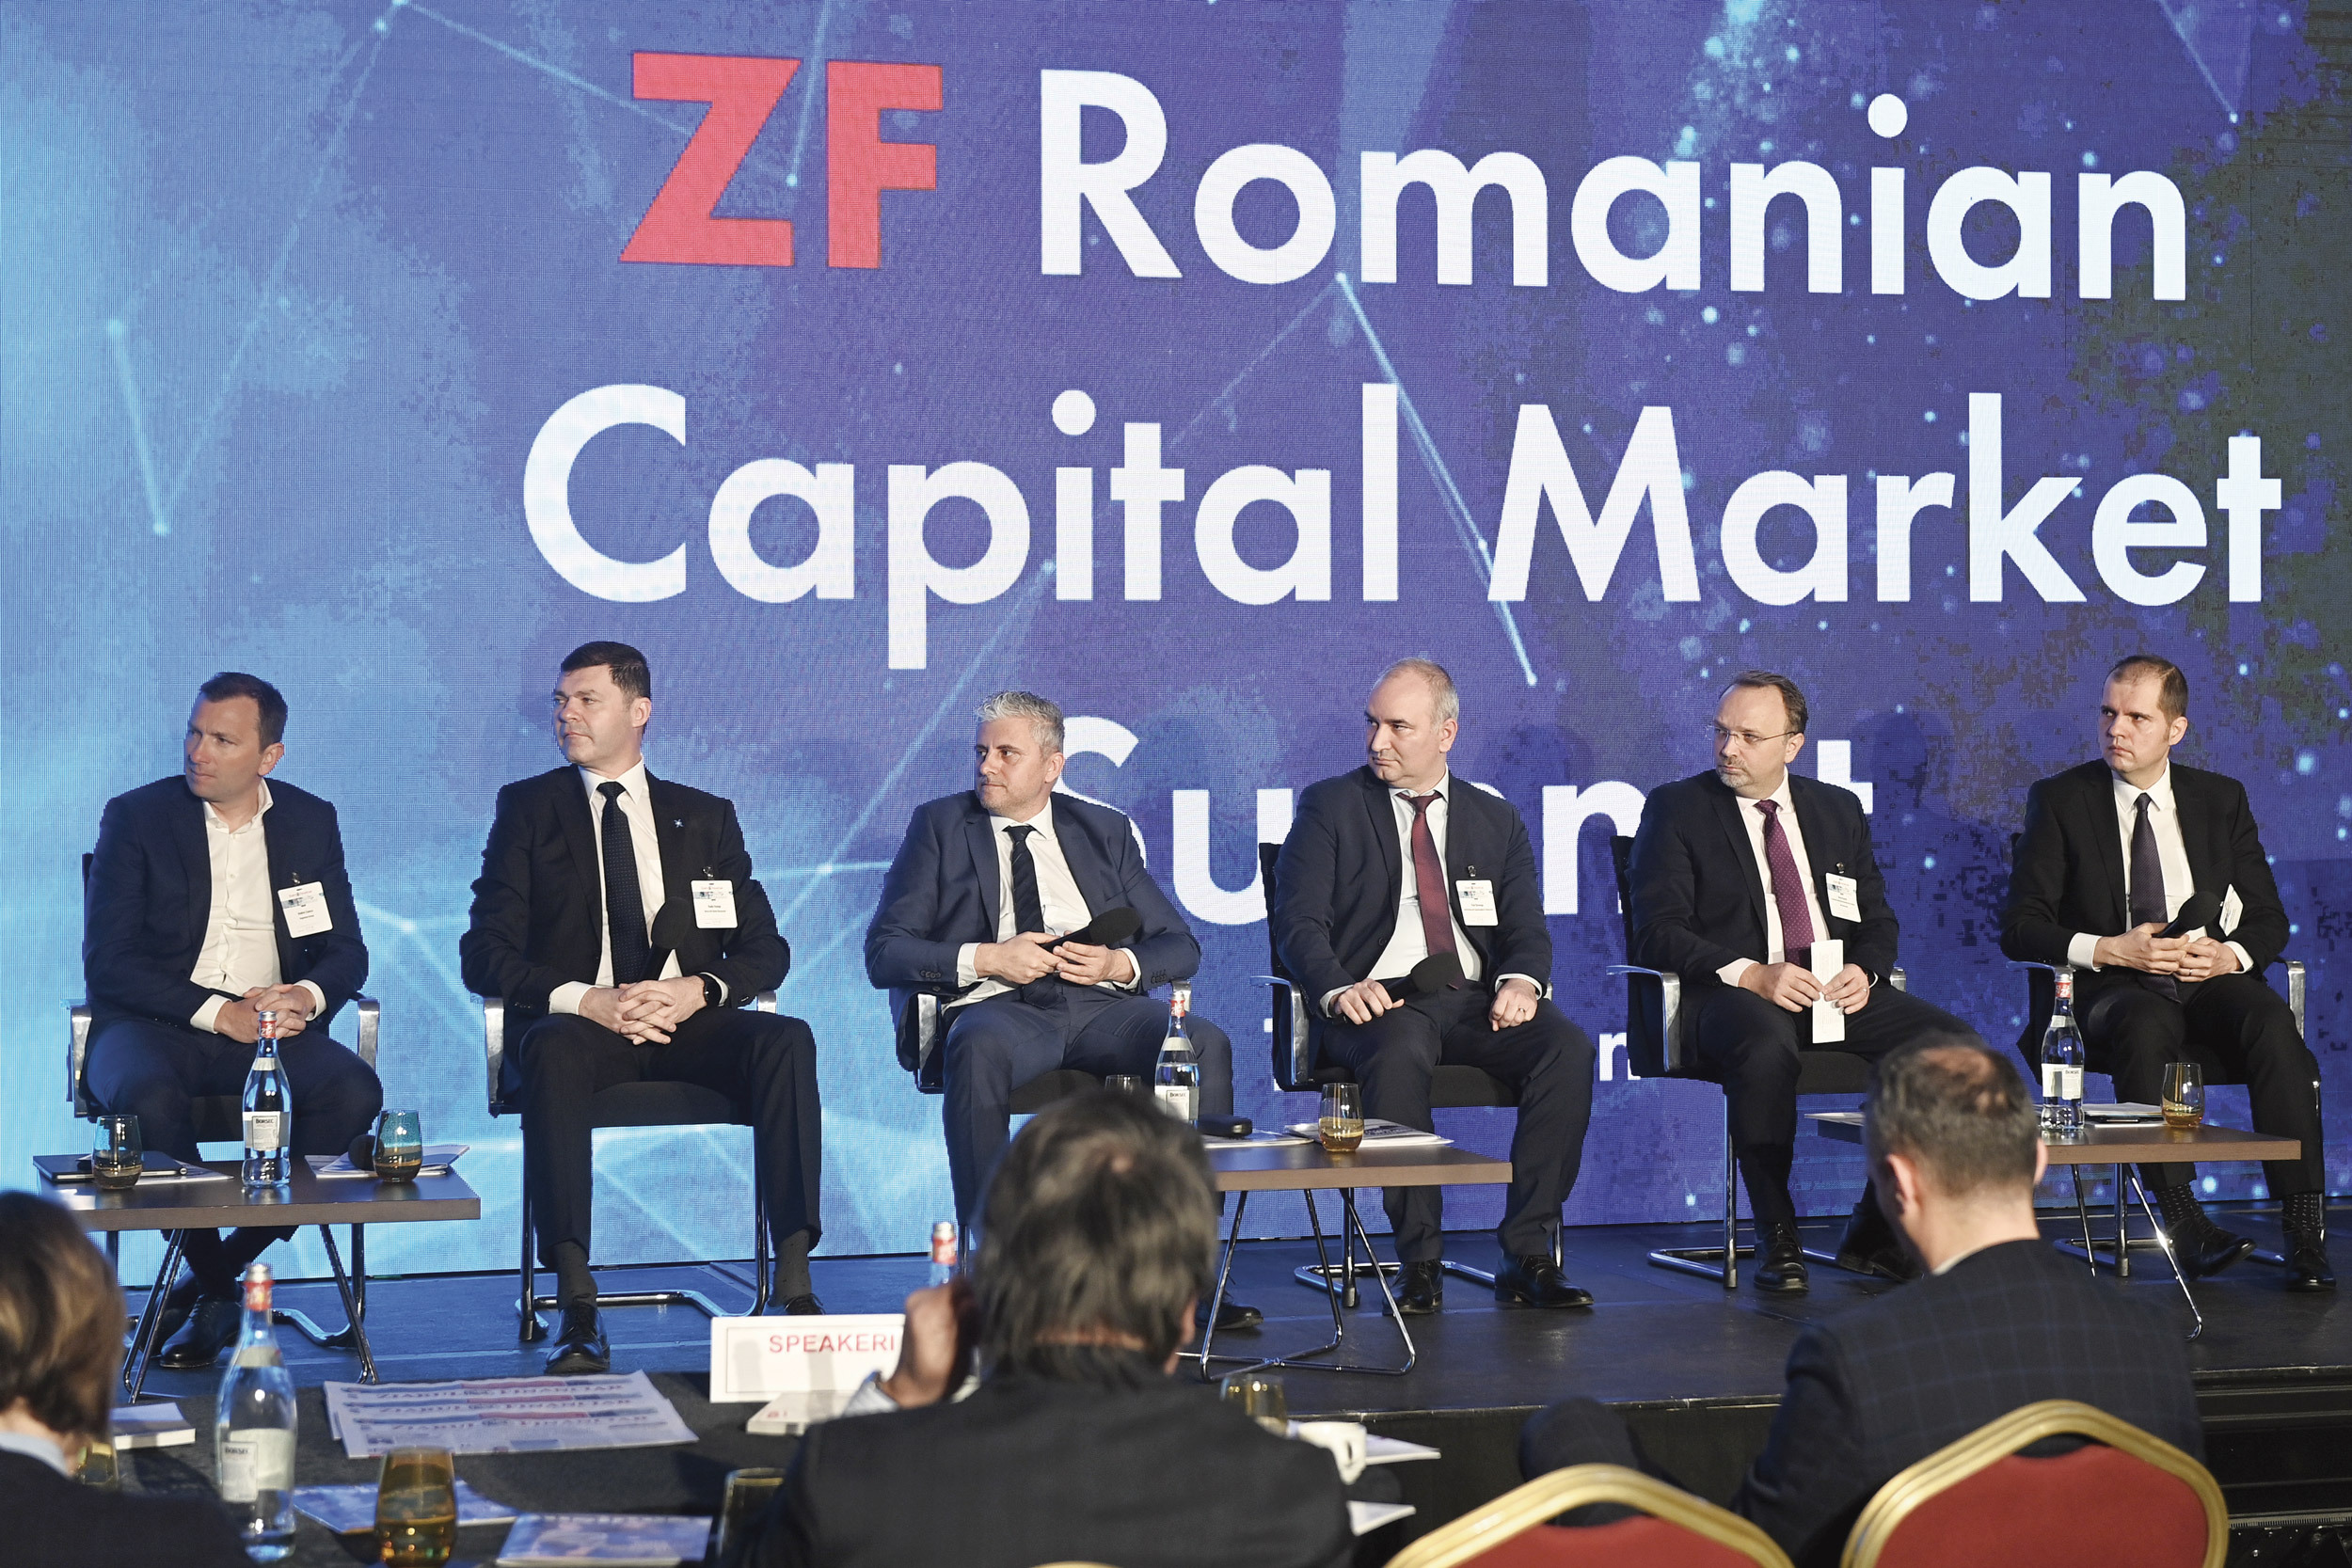 Conferinţa ZF Romanian Capital Market. Investitorii care nu au trecut prin criza din 2008-2009 nu pot înţelege la nivel emoţional ce se întâmplă acum. Experienţa martie 2020 este insuficientă